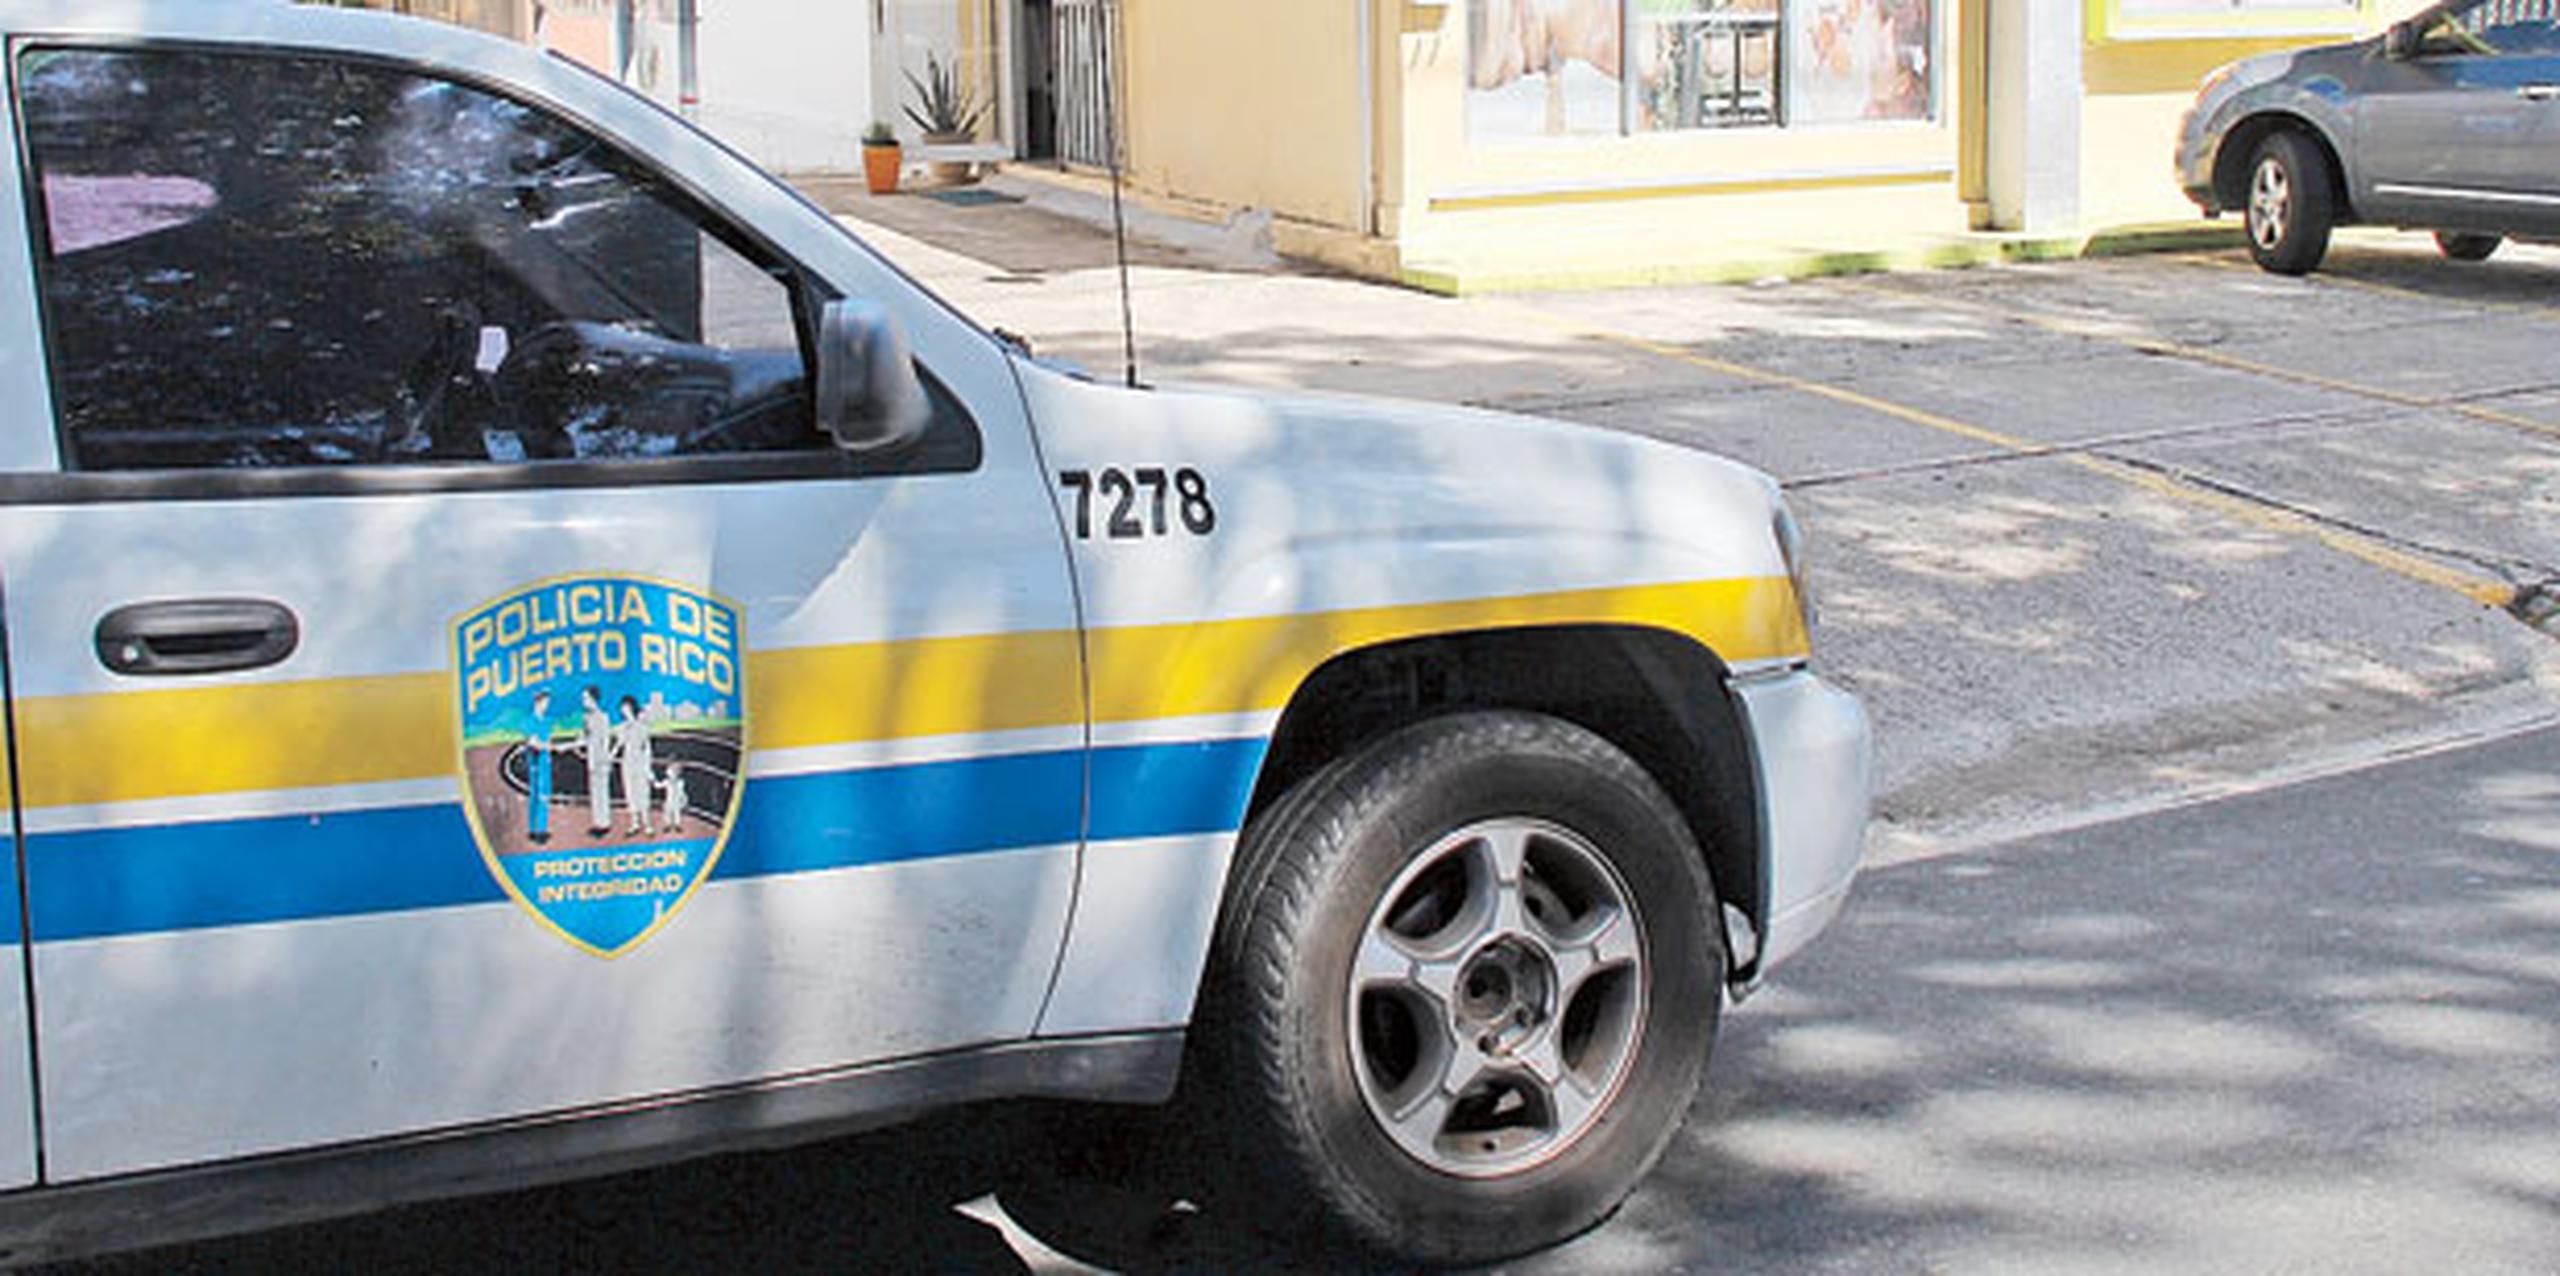 El crimen más reciente se reportó en los predios de un bar localizado en la carretera PR-506 del barrio Coto Laurel en Ponce. (Archivo)